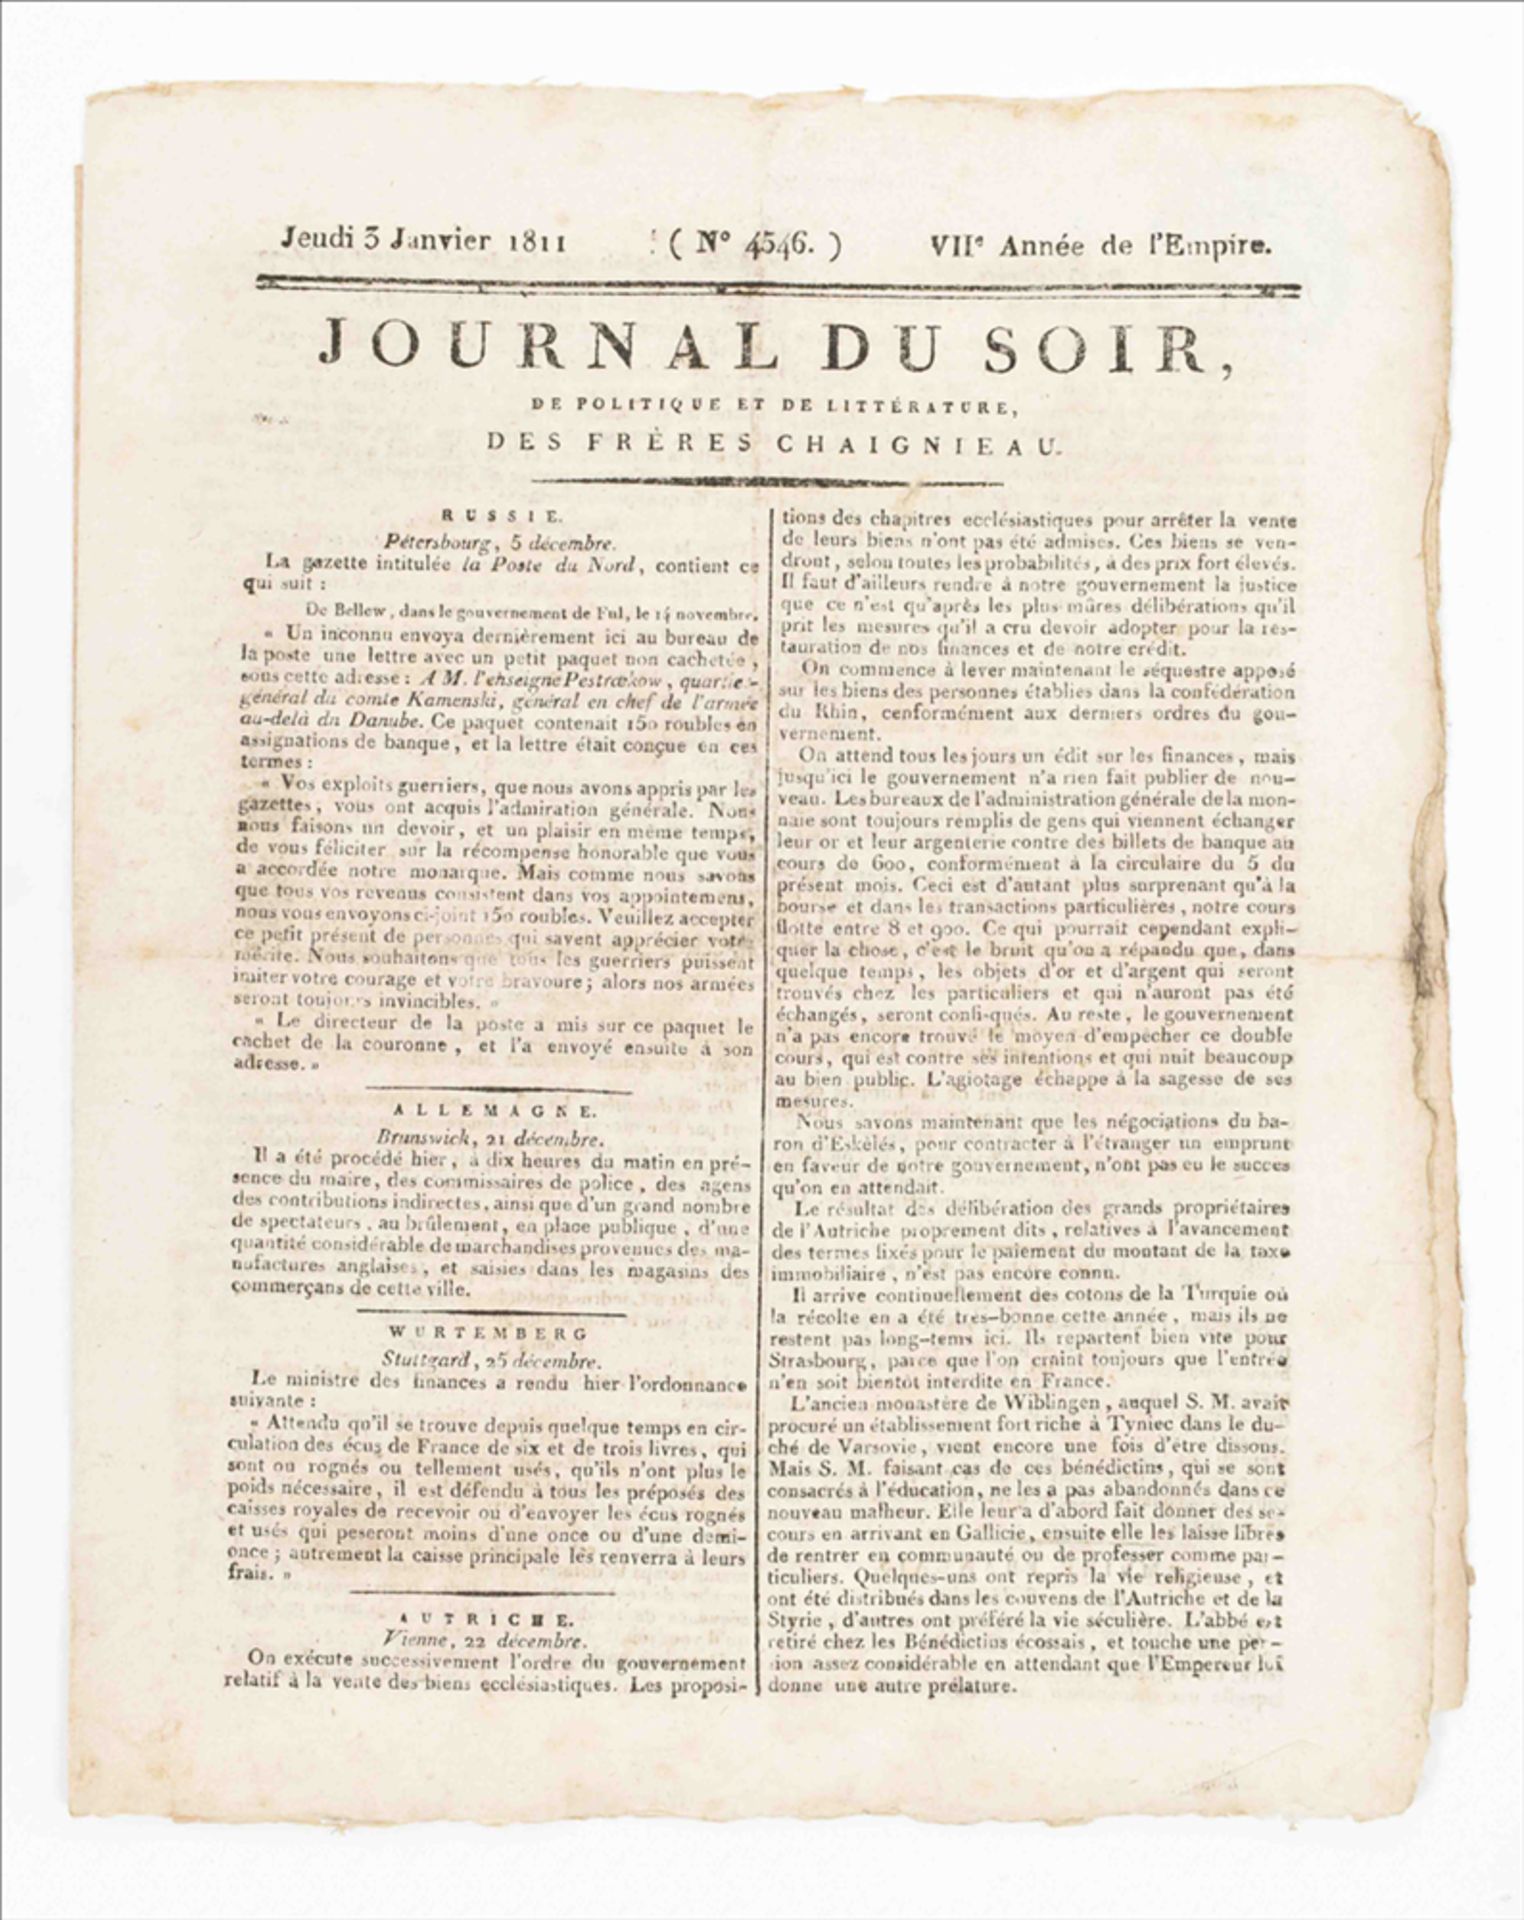 Journal du soir - Image 2 of 5